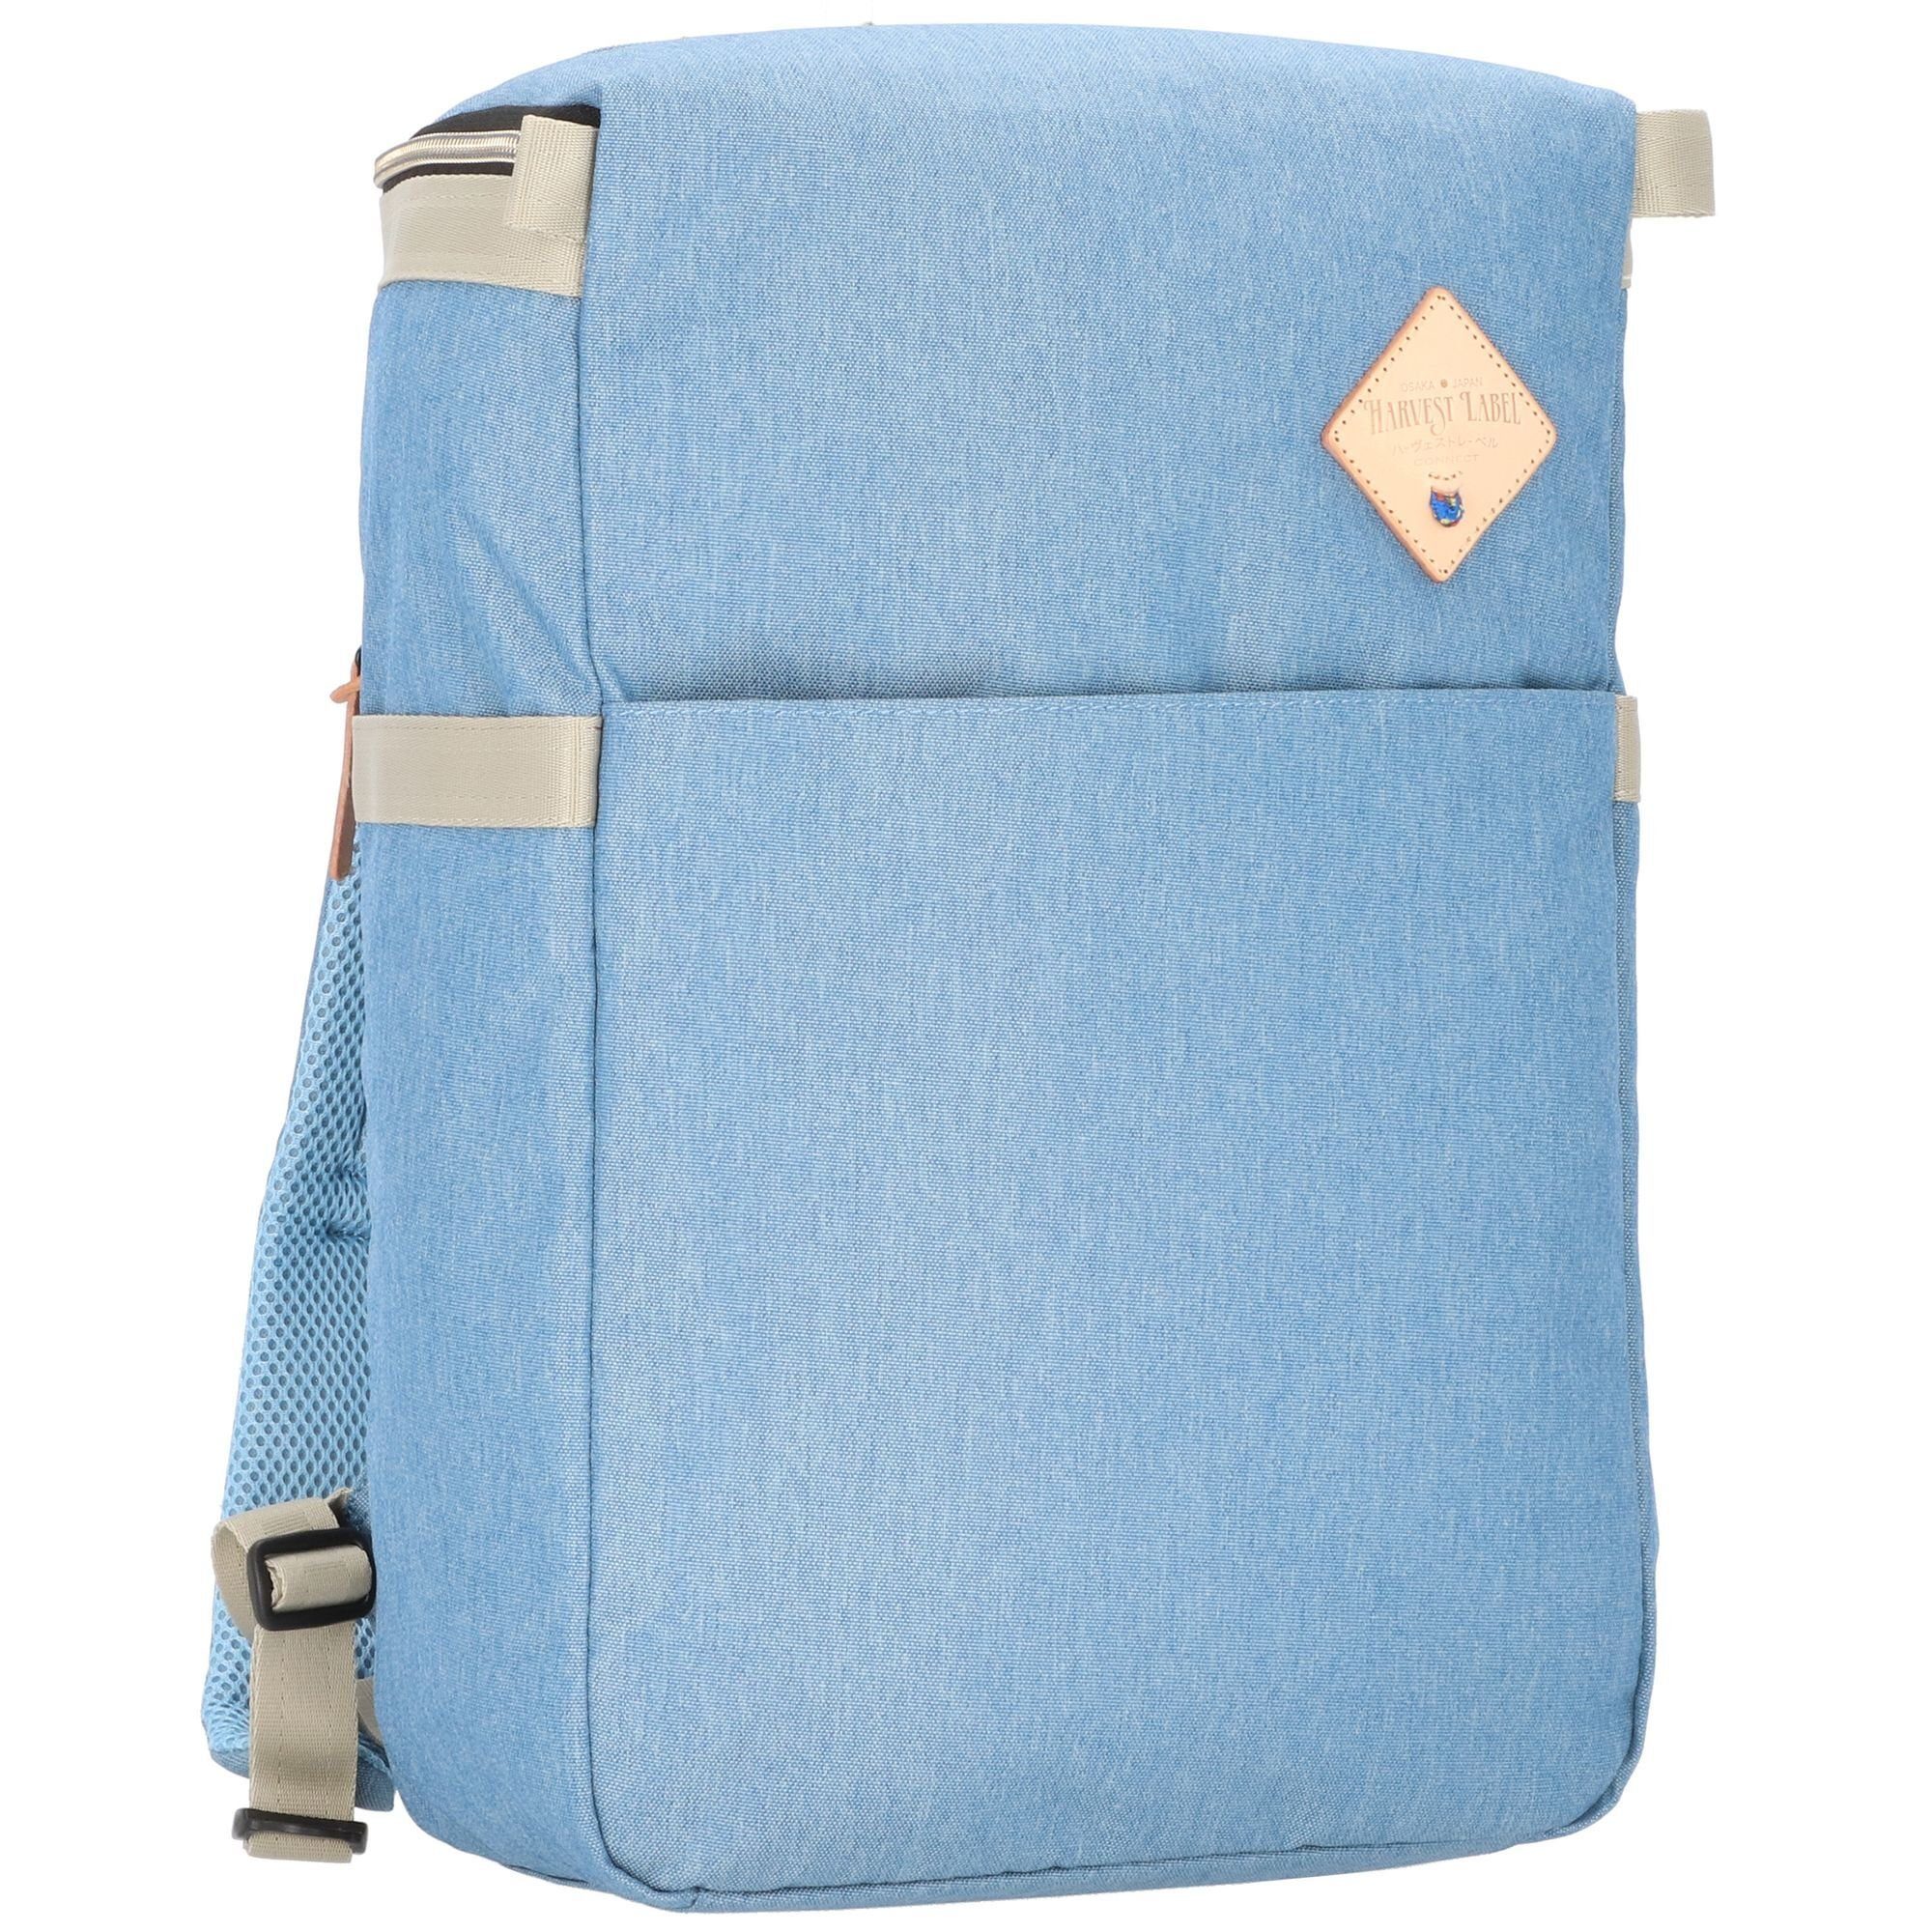 Harvest Label Daypack, Polyester blue